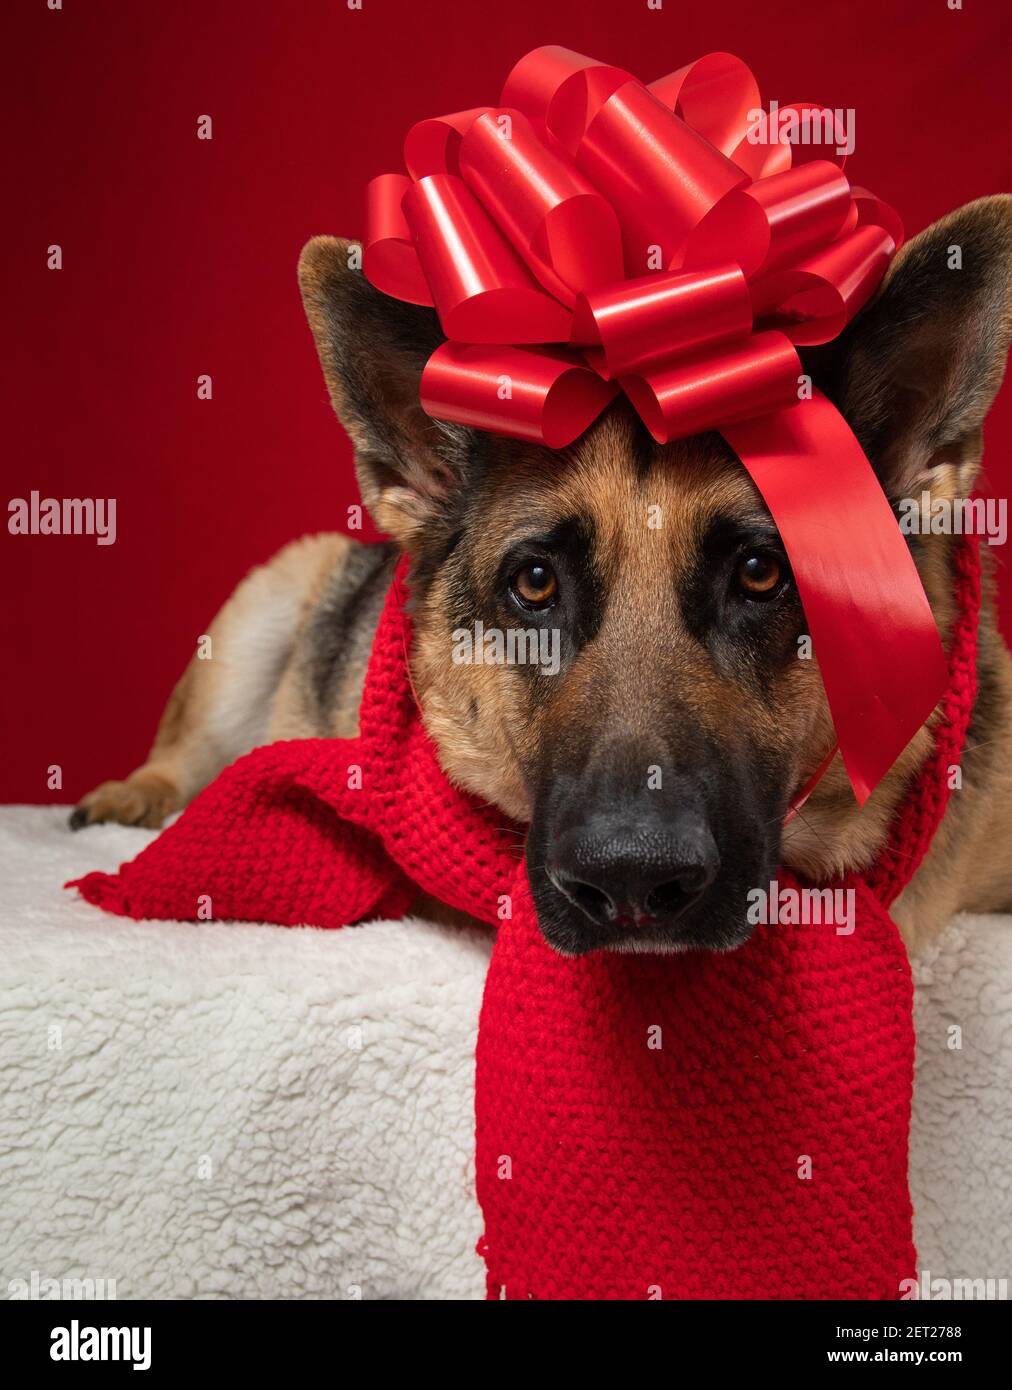 Portrait eines Schäferhundes mit Schal gewickelt In einer roten Schleife auf einem Teppich Stockfoto